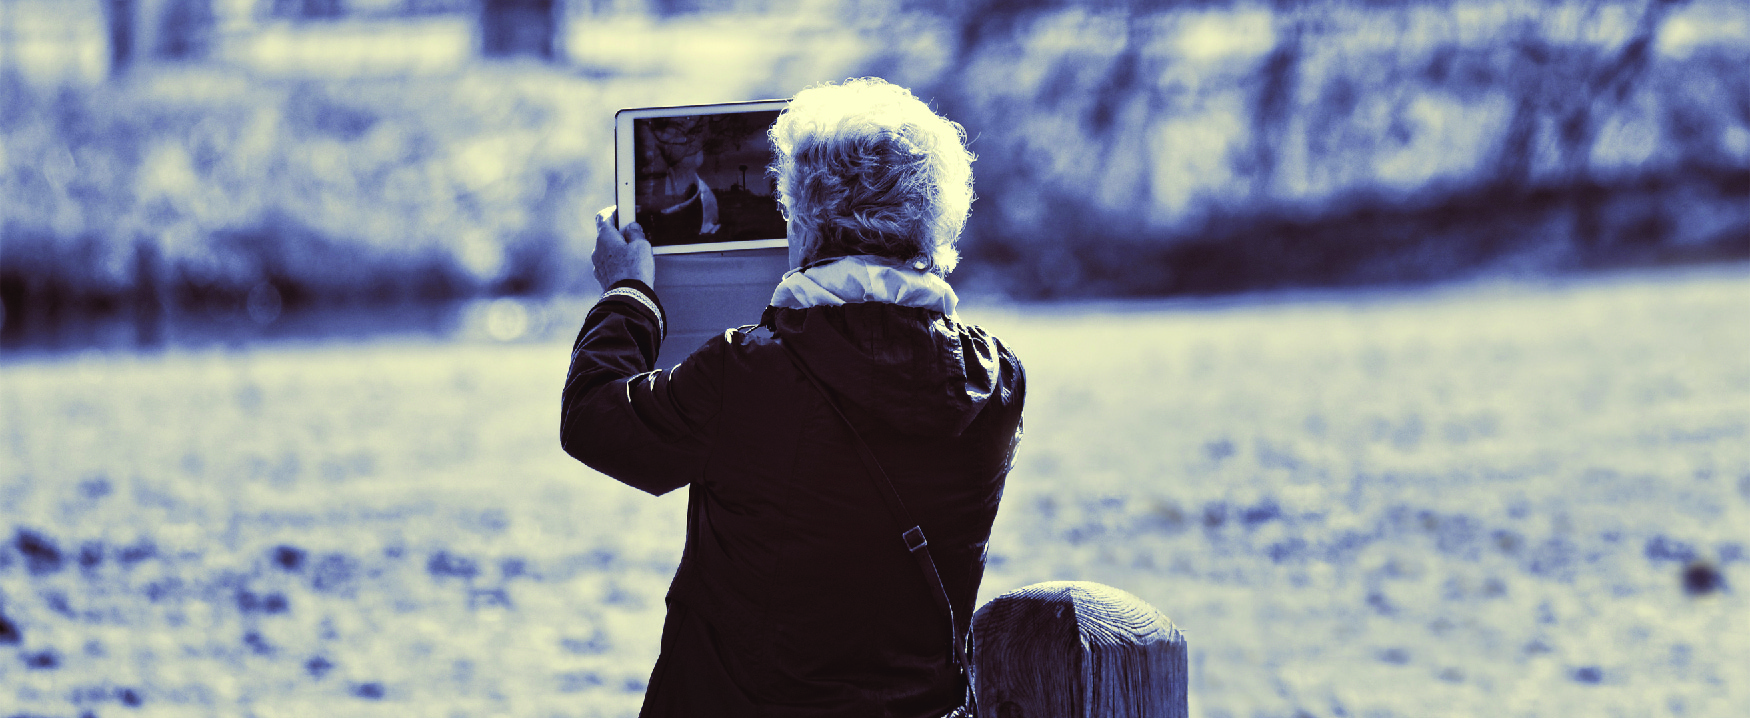 Imagen de una persona en un campo por un arroyo sosteniendo una tableta de computadora.